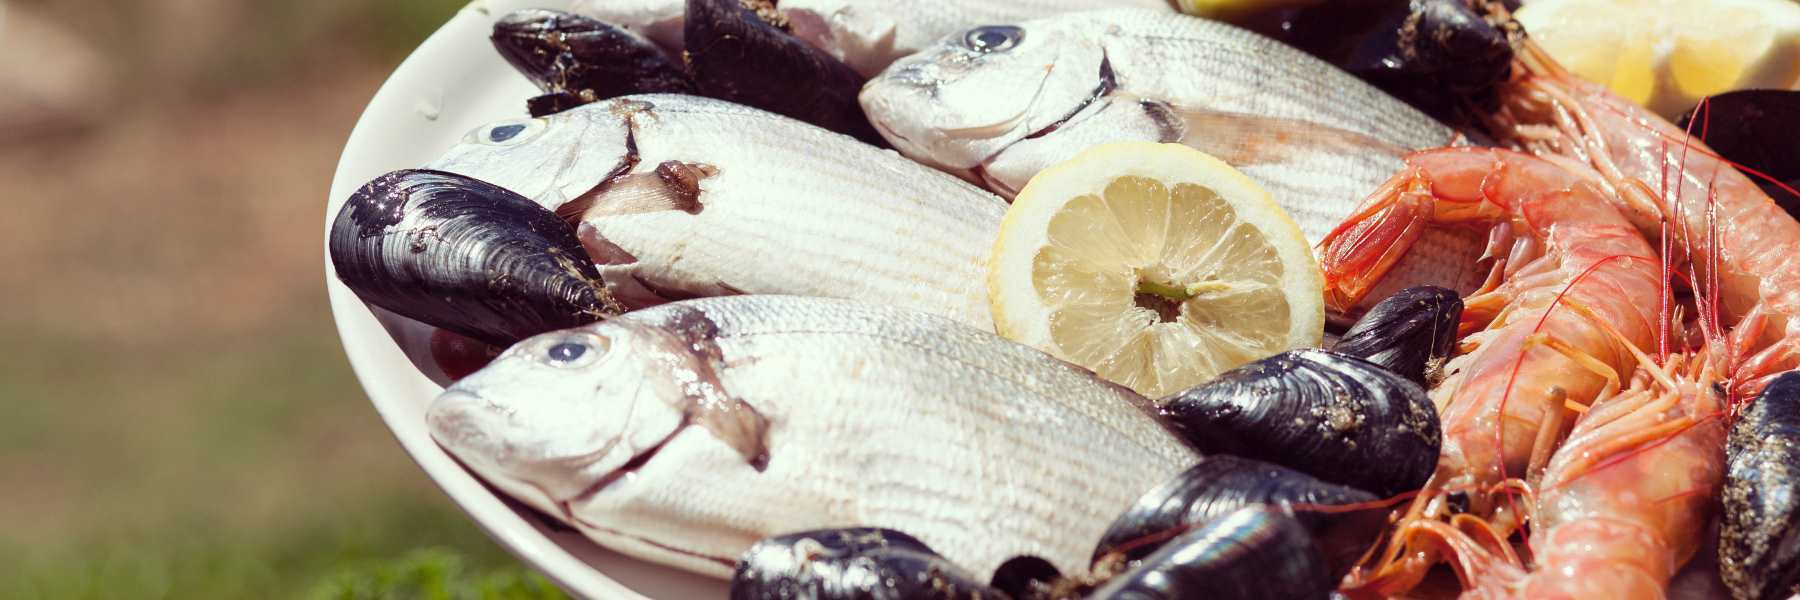 Sardine fillets in Cervia's salt